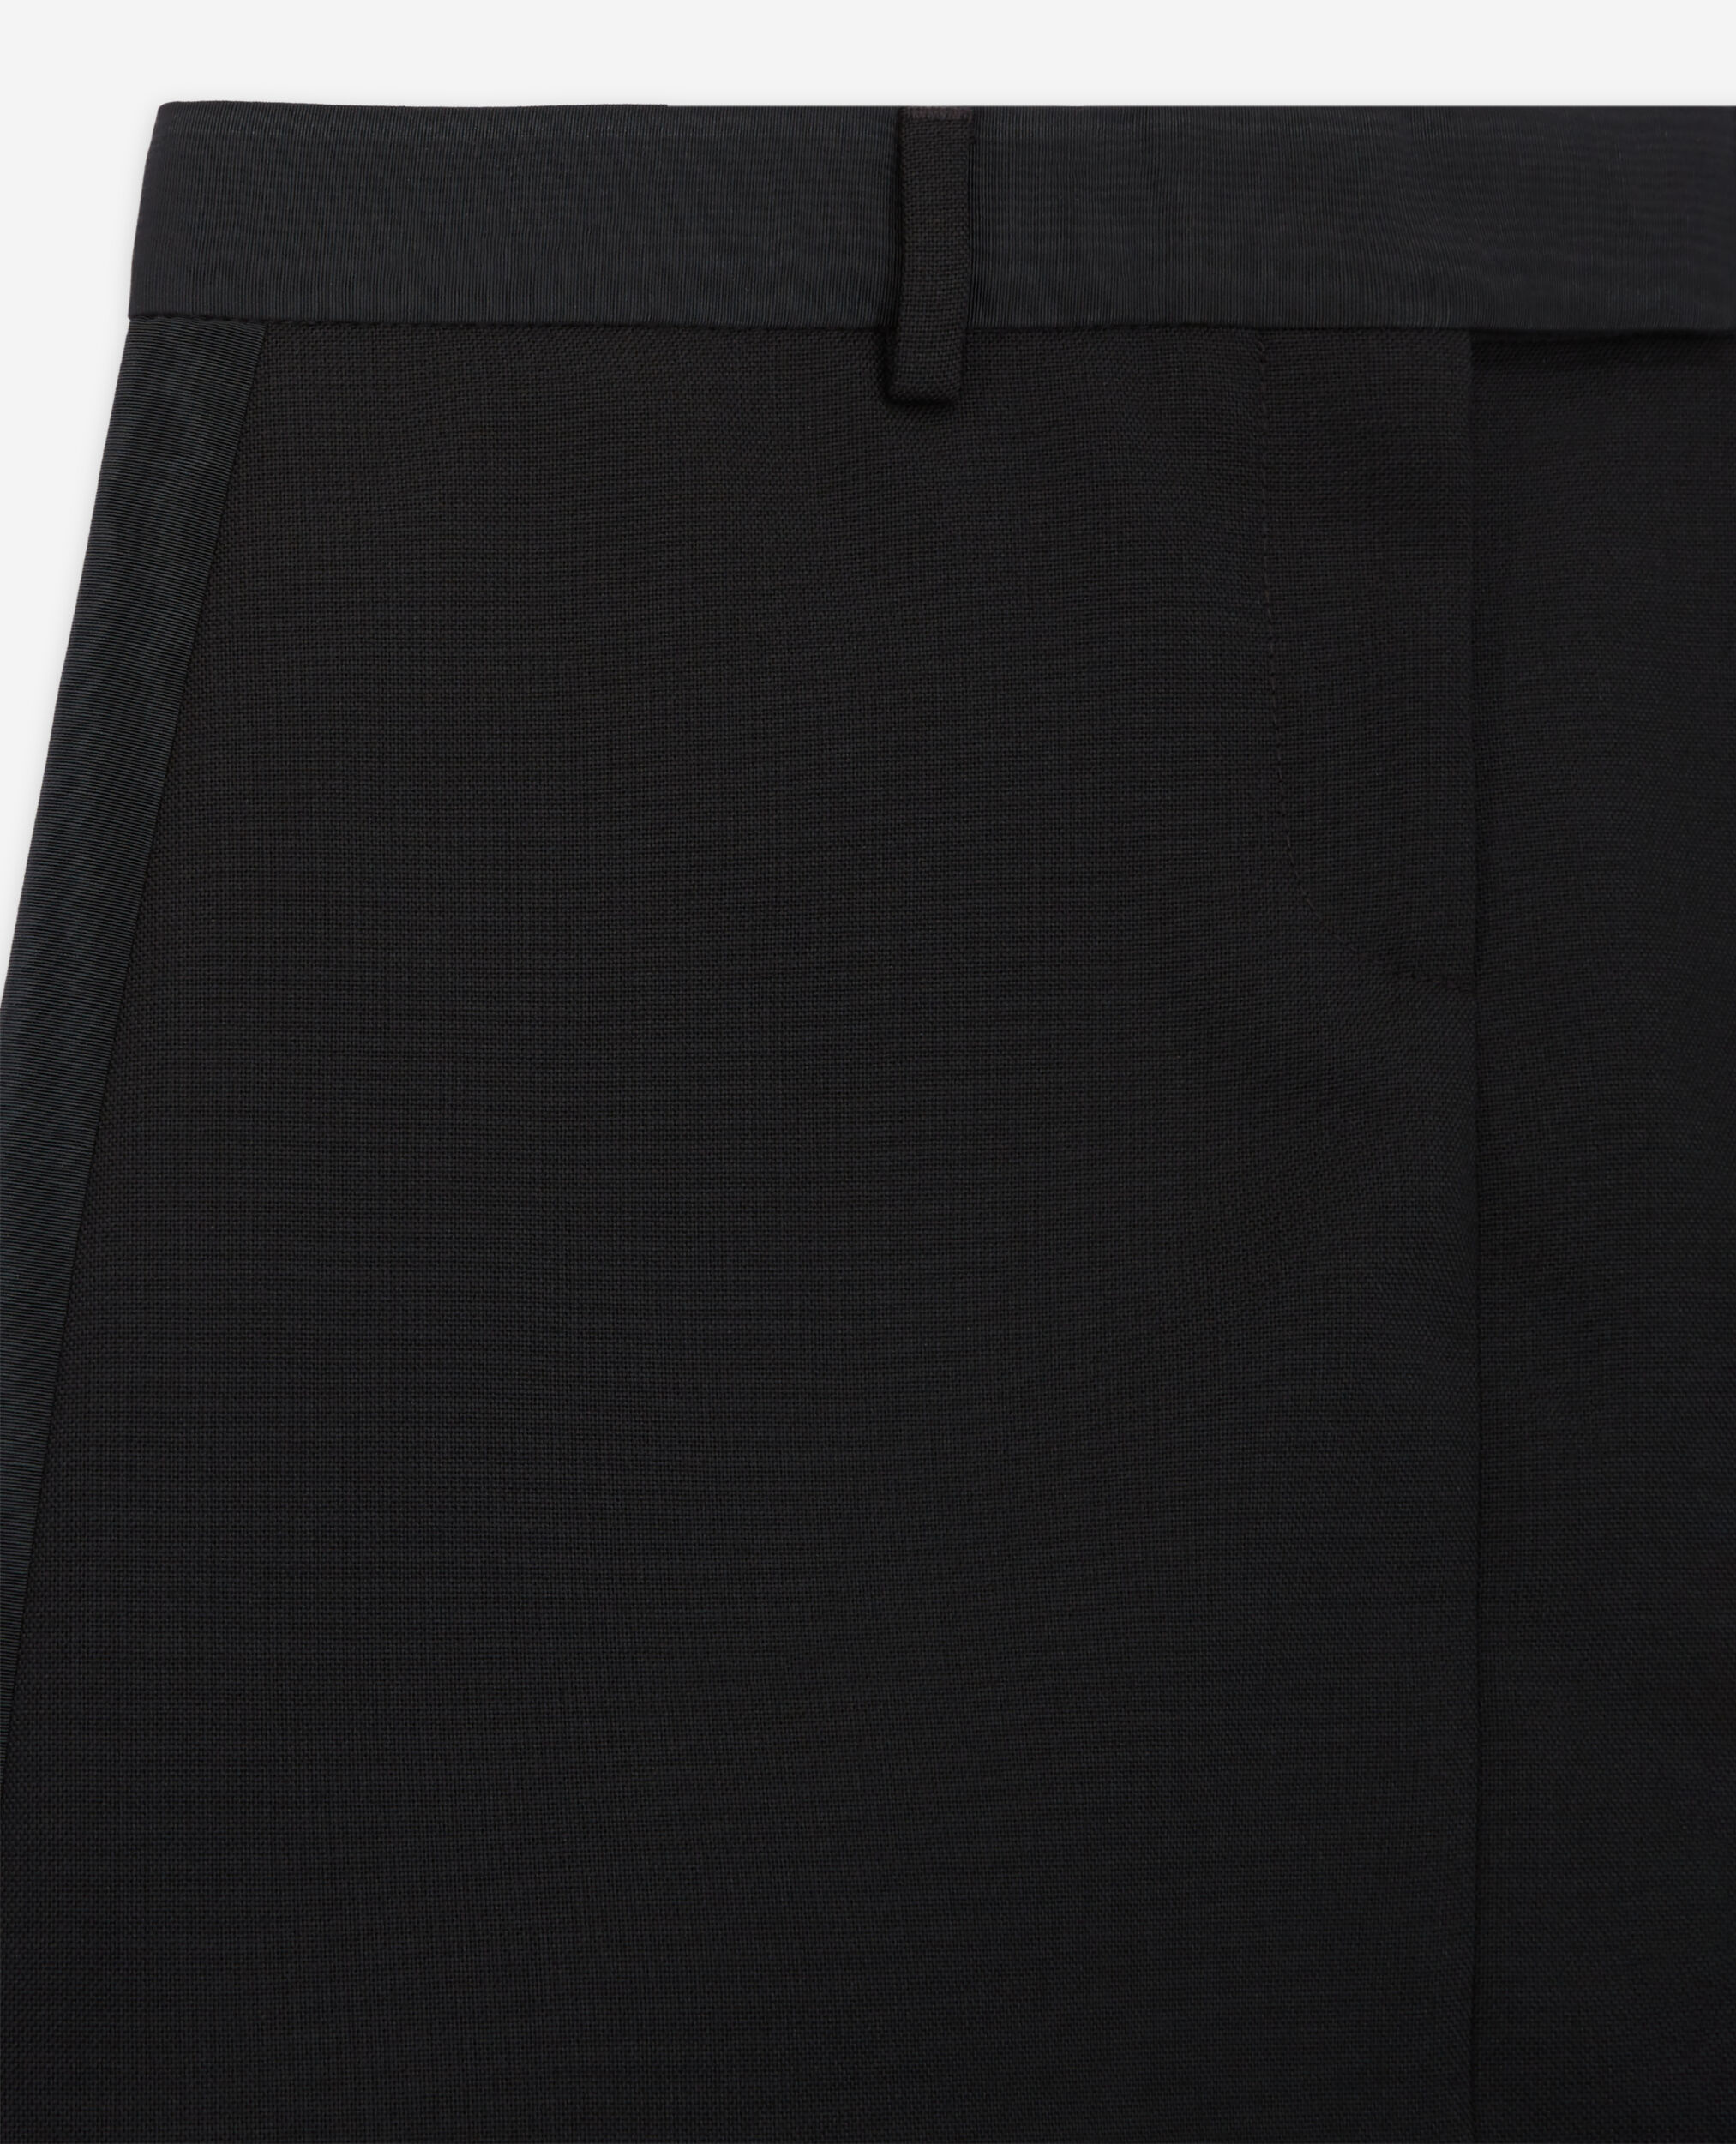 Short black wool skirt, BLACK, hi-res image number null